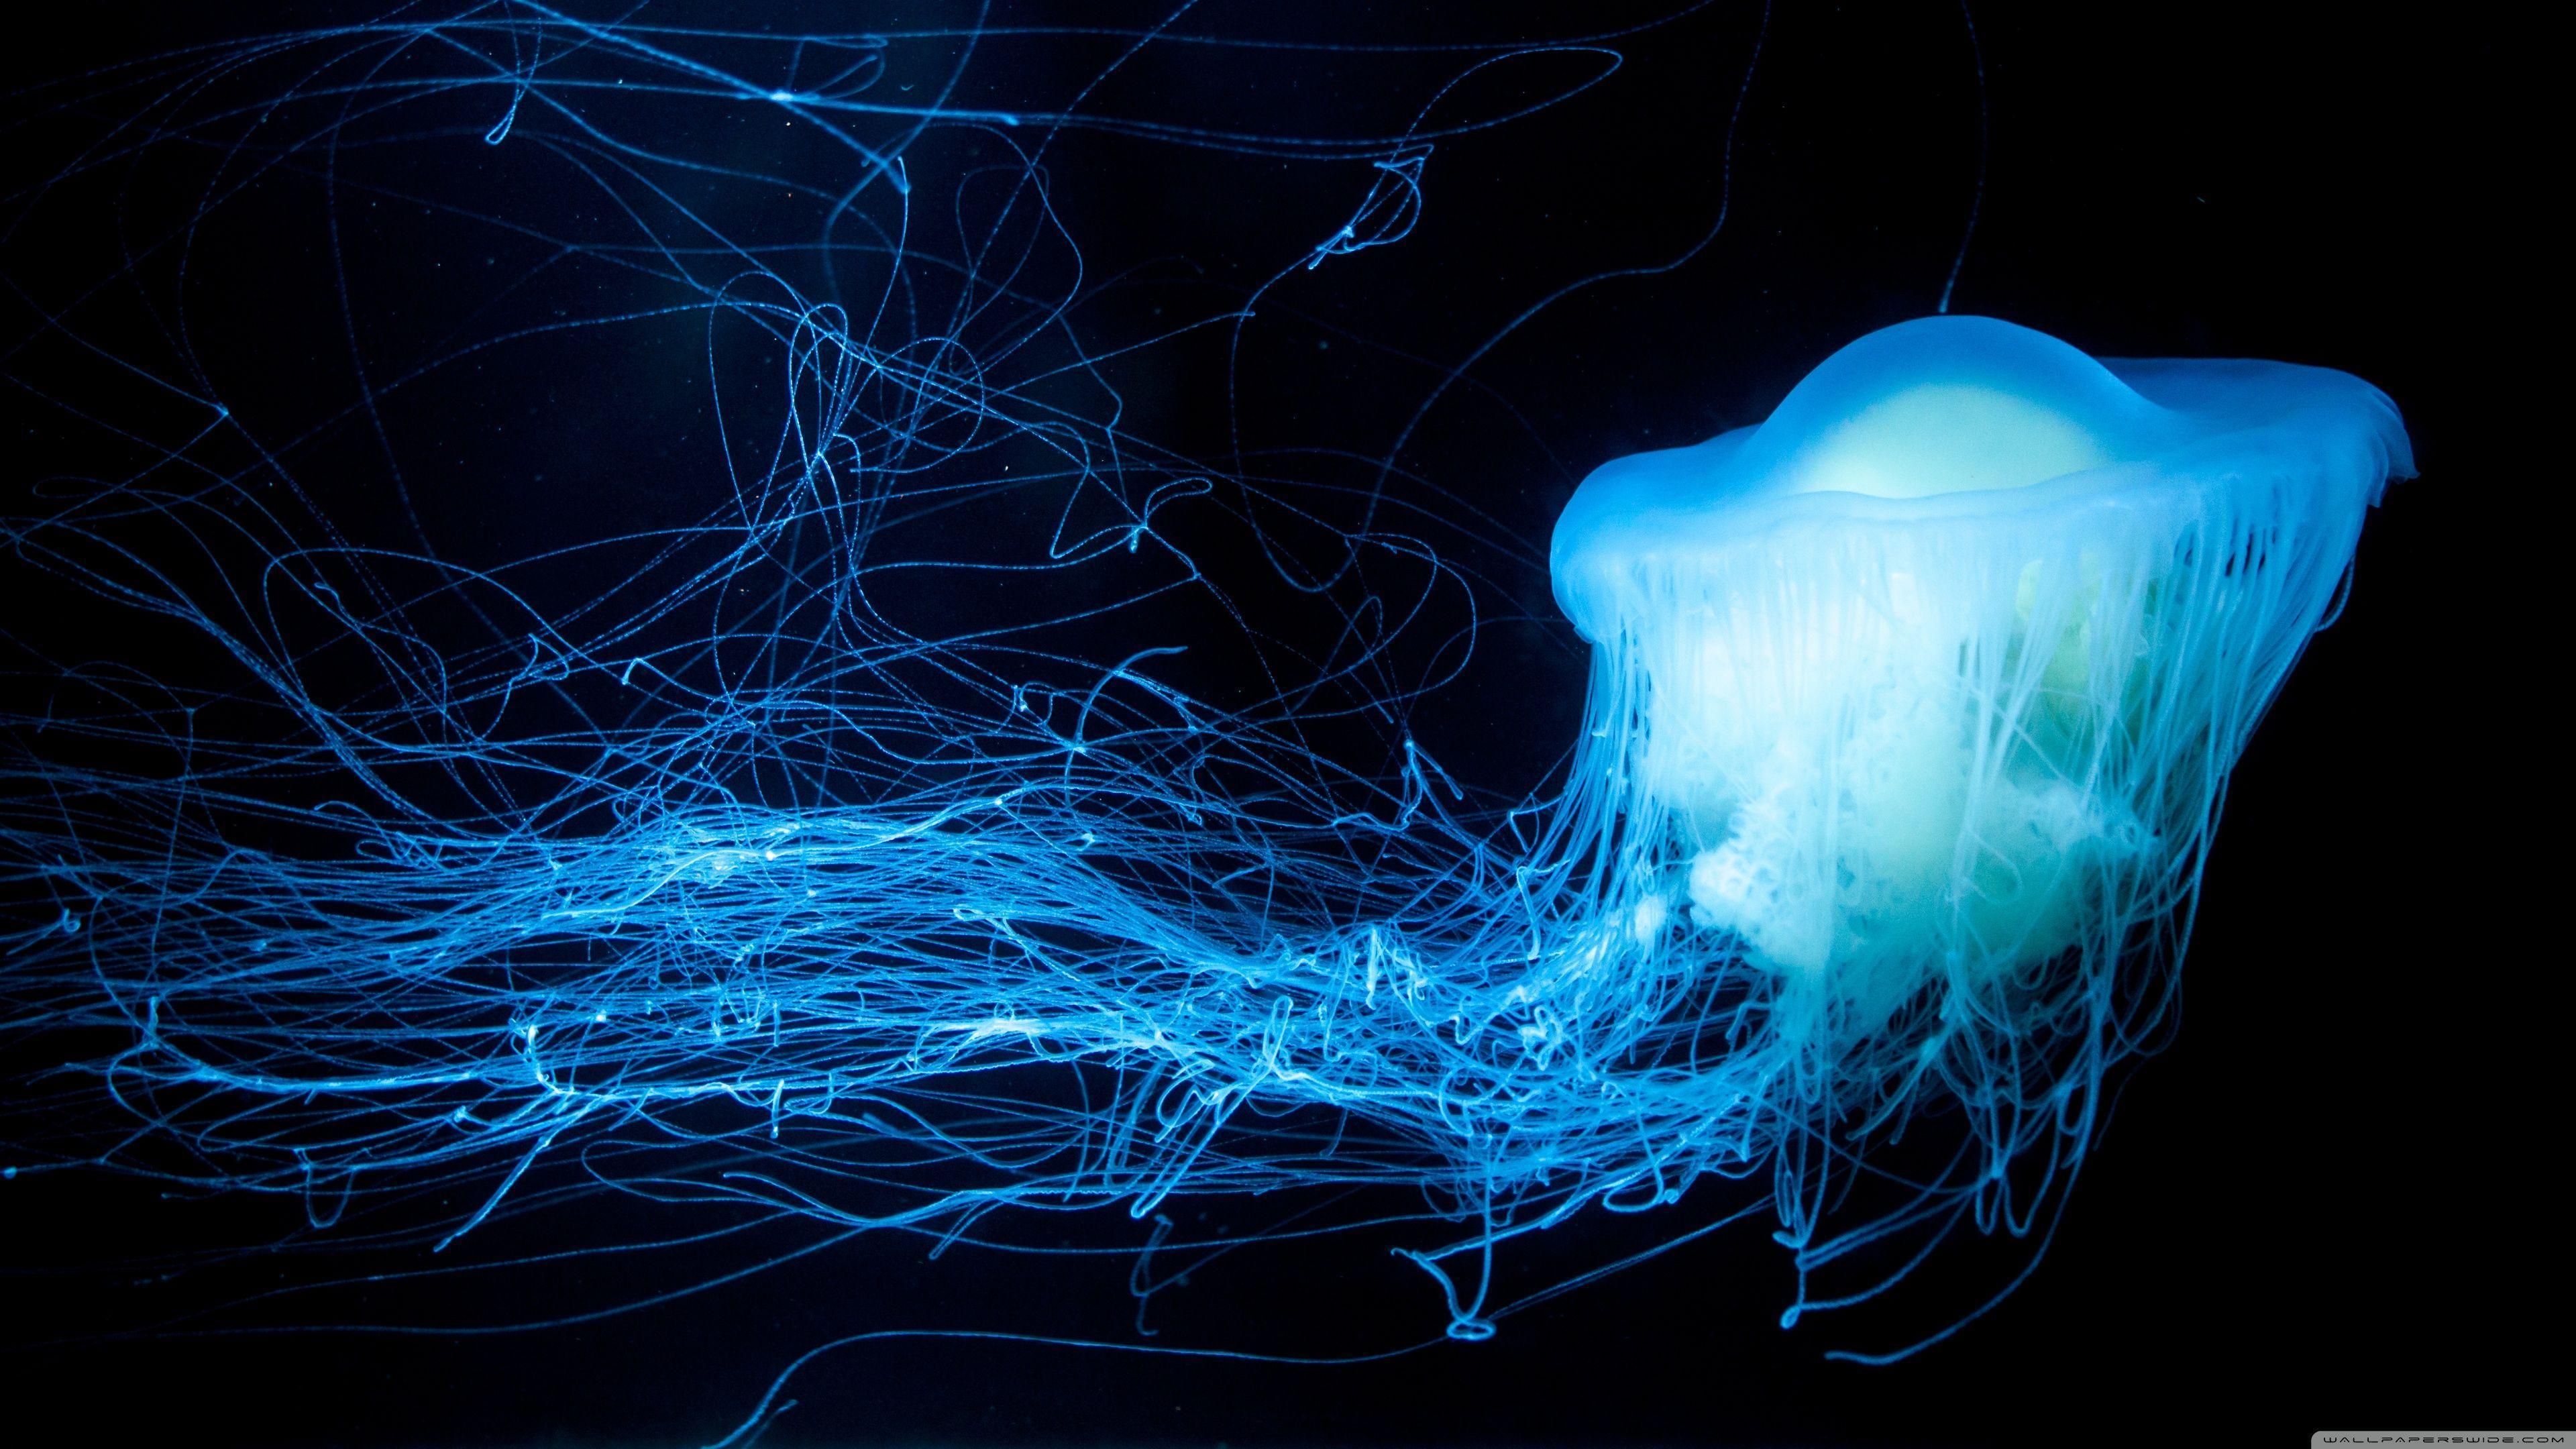 Glowing Jellyfish HD desktop wallpaper, Widescreen, High